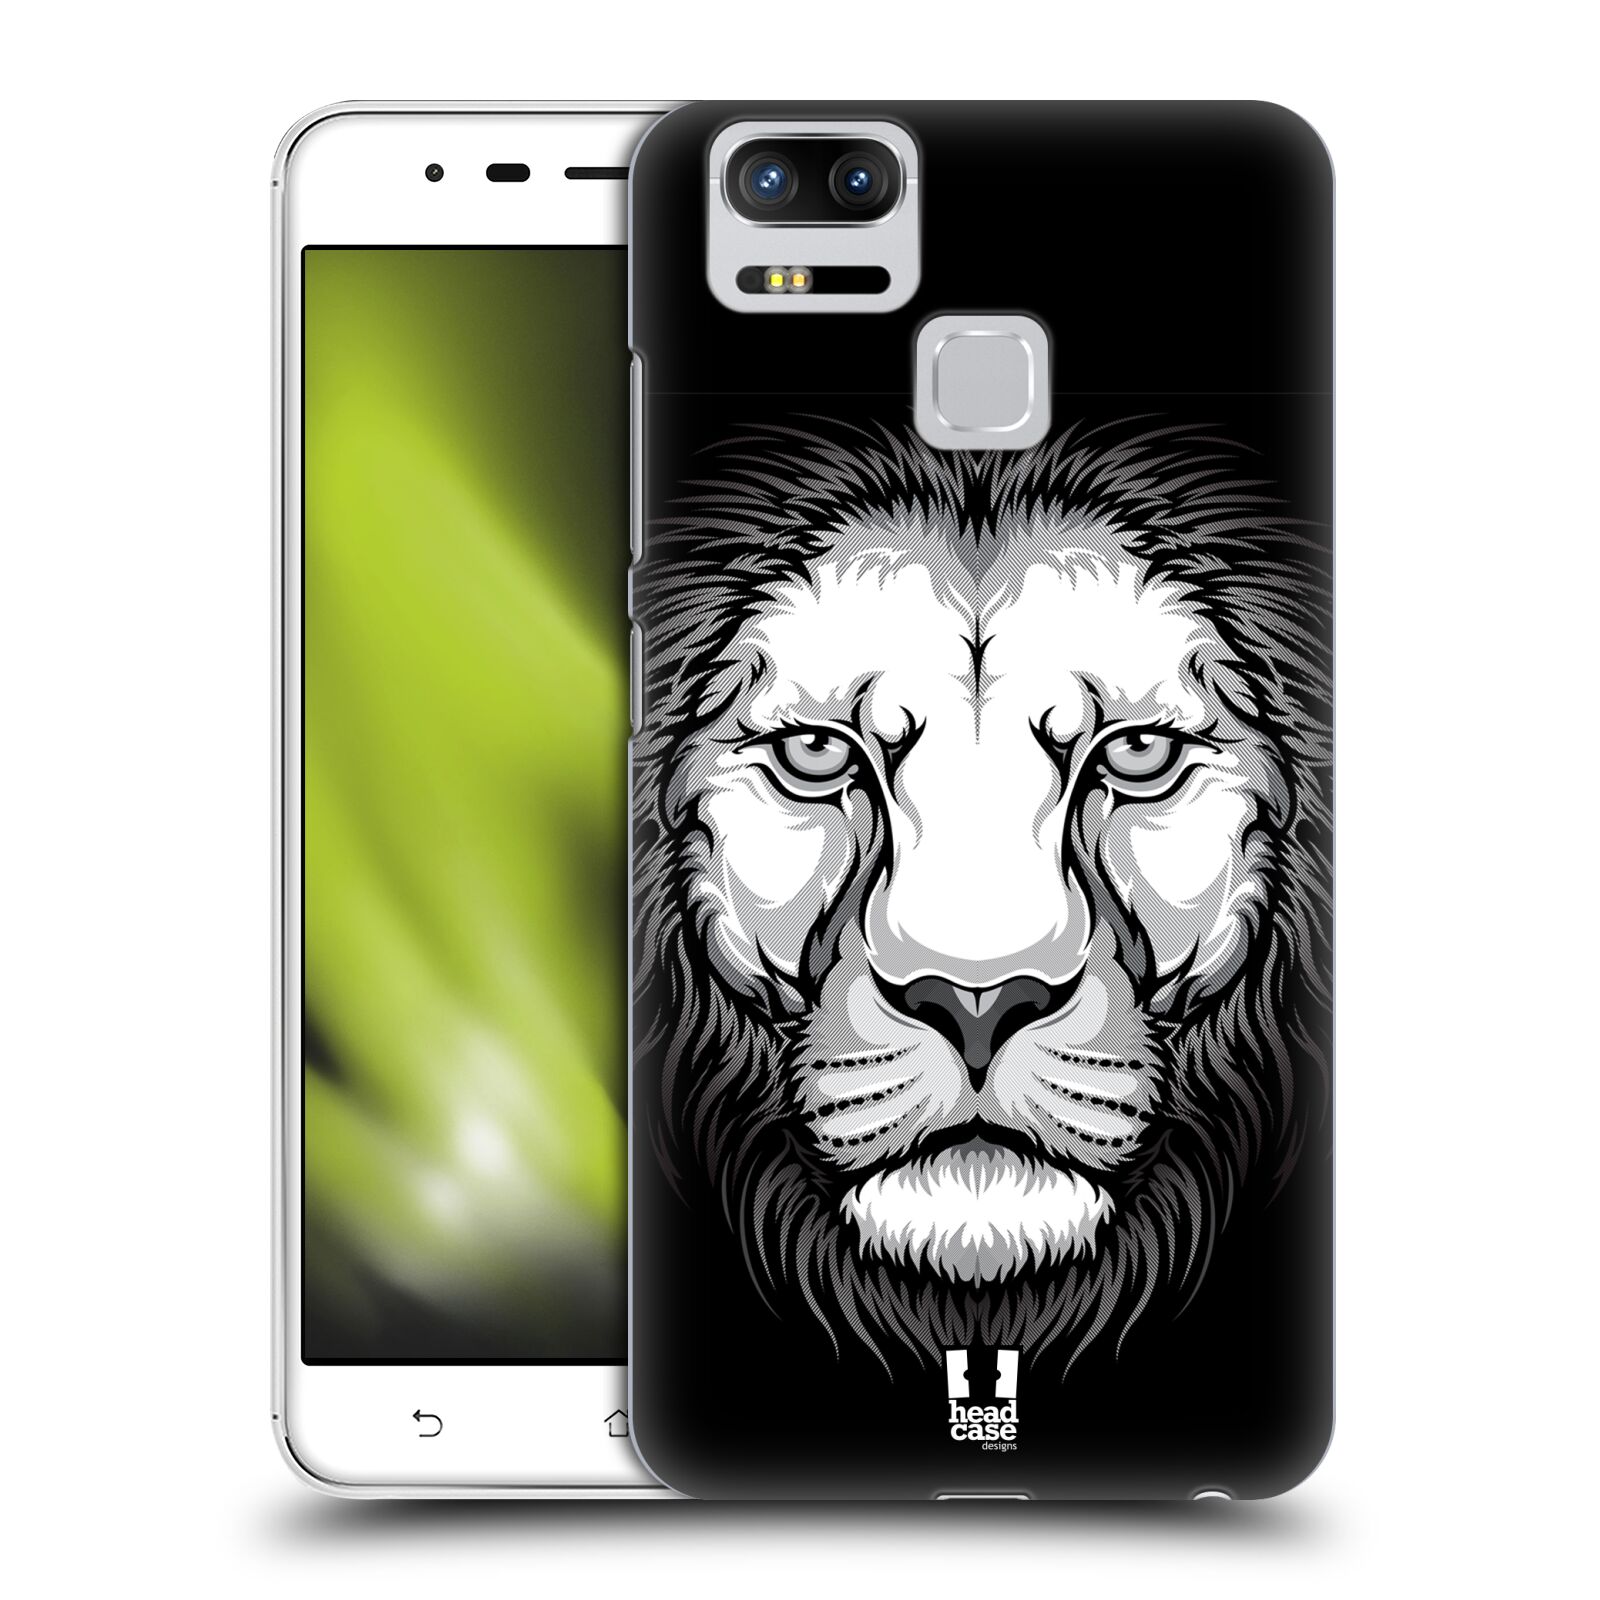 HEAD CASE plastový obal na mobil Asus Zenfone 3 Zoom ZE553KL vzor Zvíře kreslená tvář lev